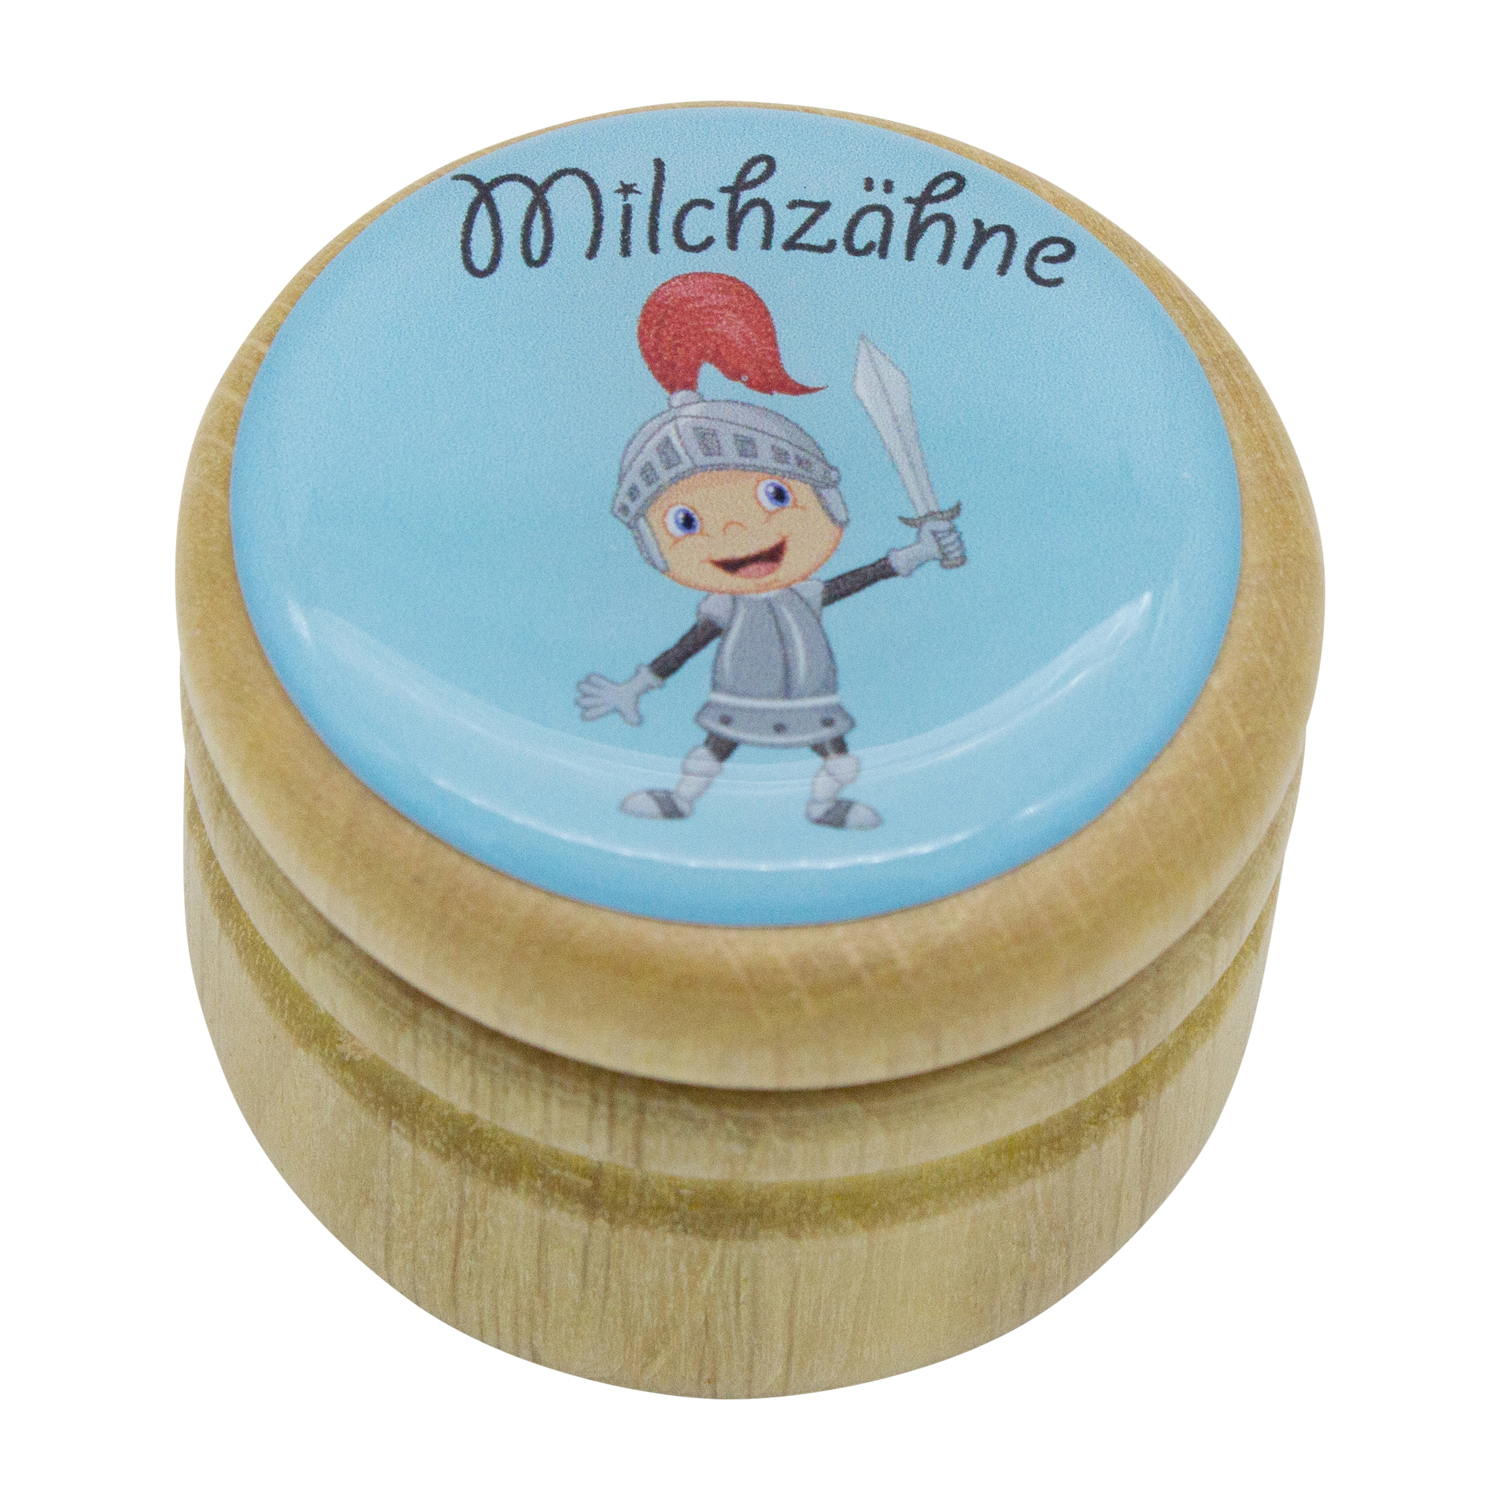 Milchzahndose Ritter Zahndose Milchzähne Bilderdose aus Holz mit Drehverschluss 44 mm ( Ritter ) - 7024